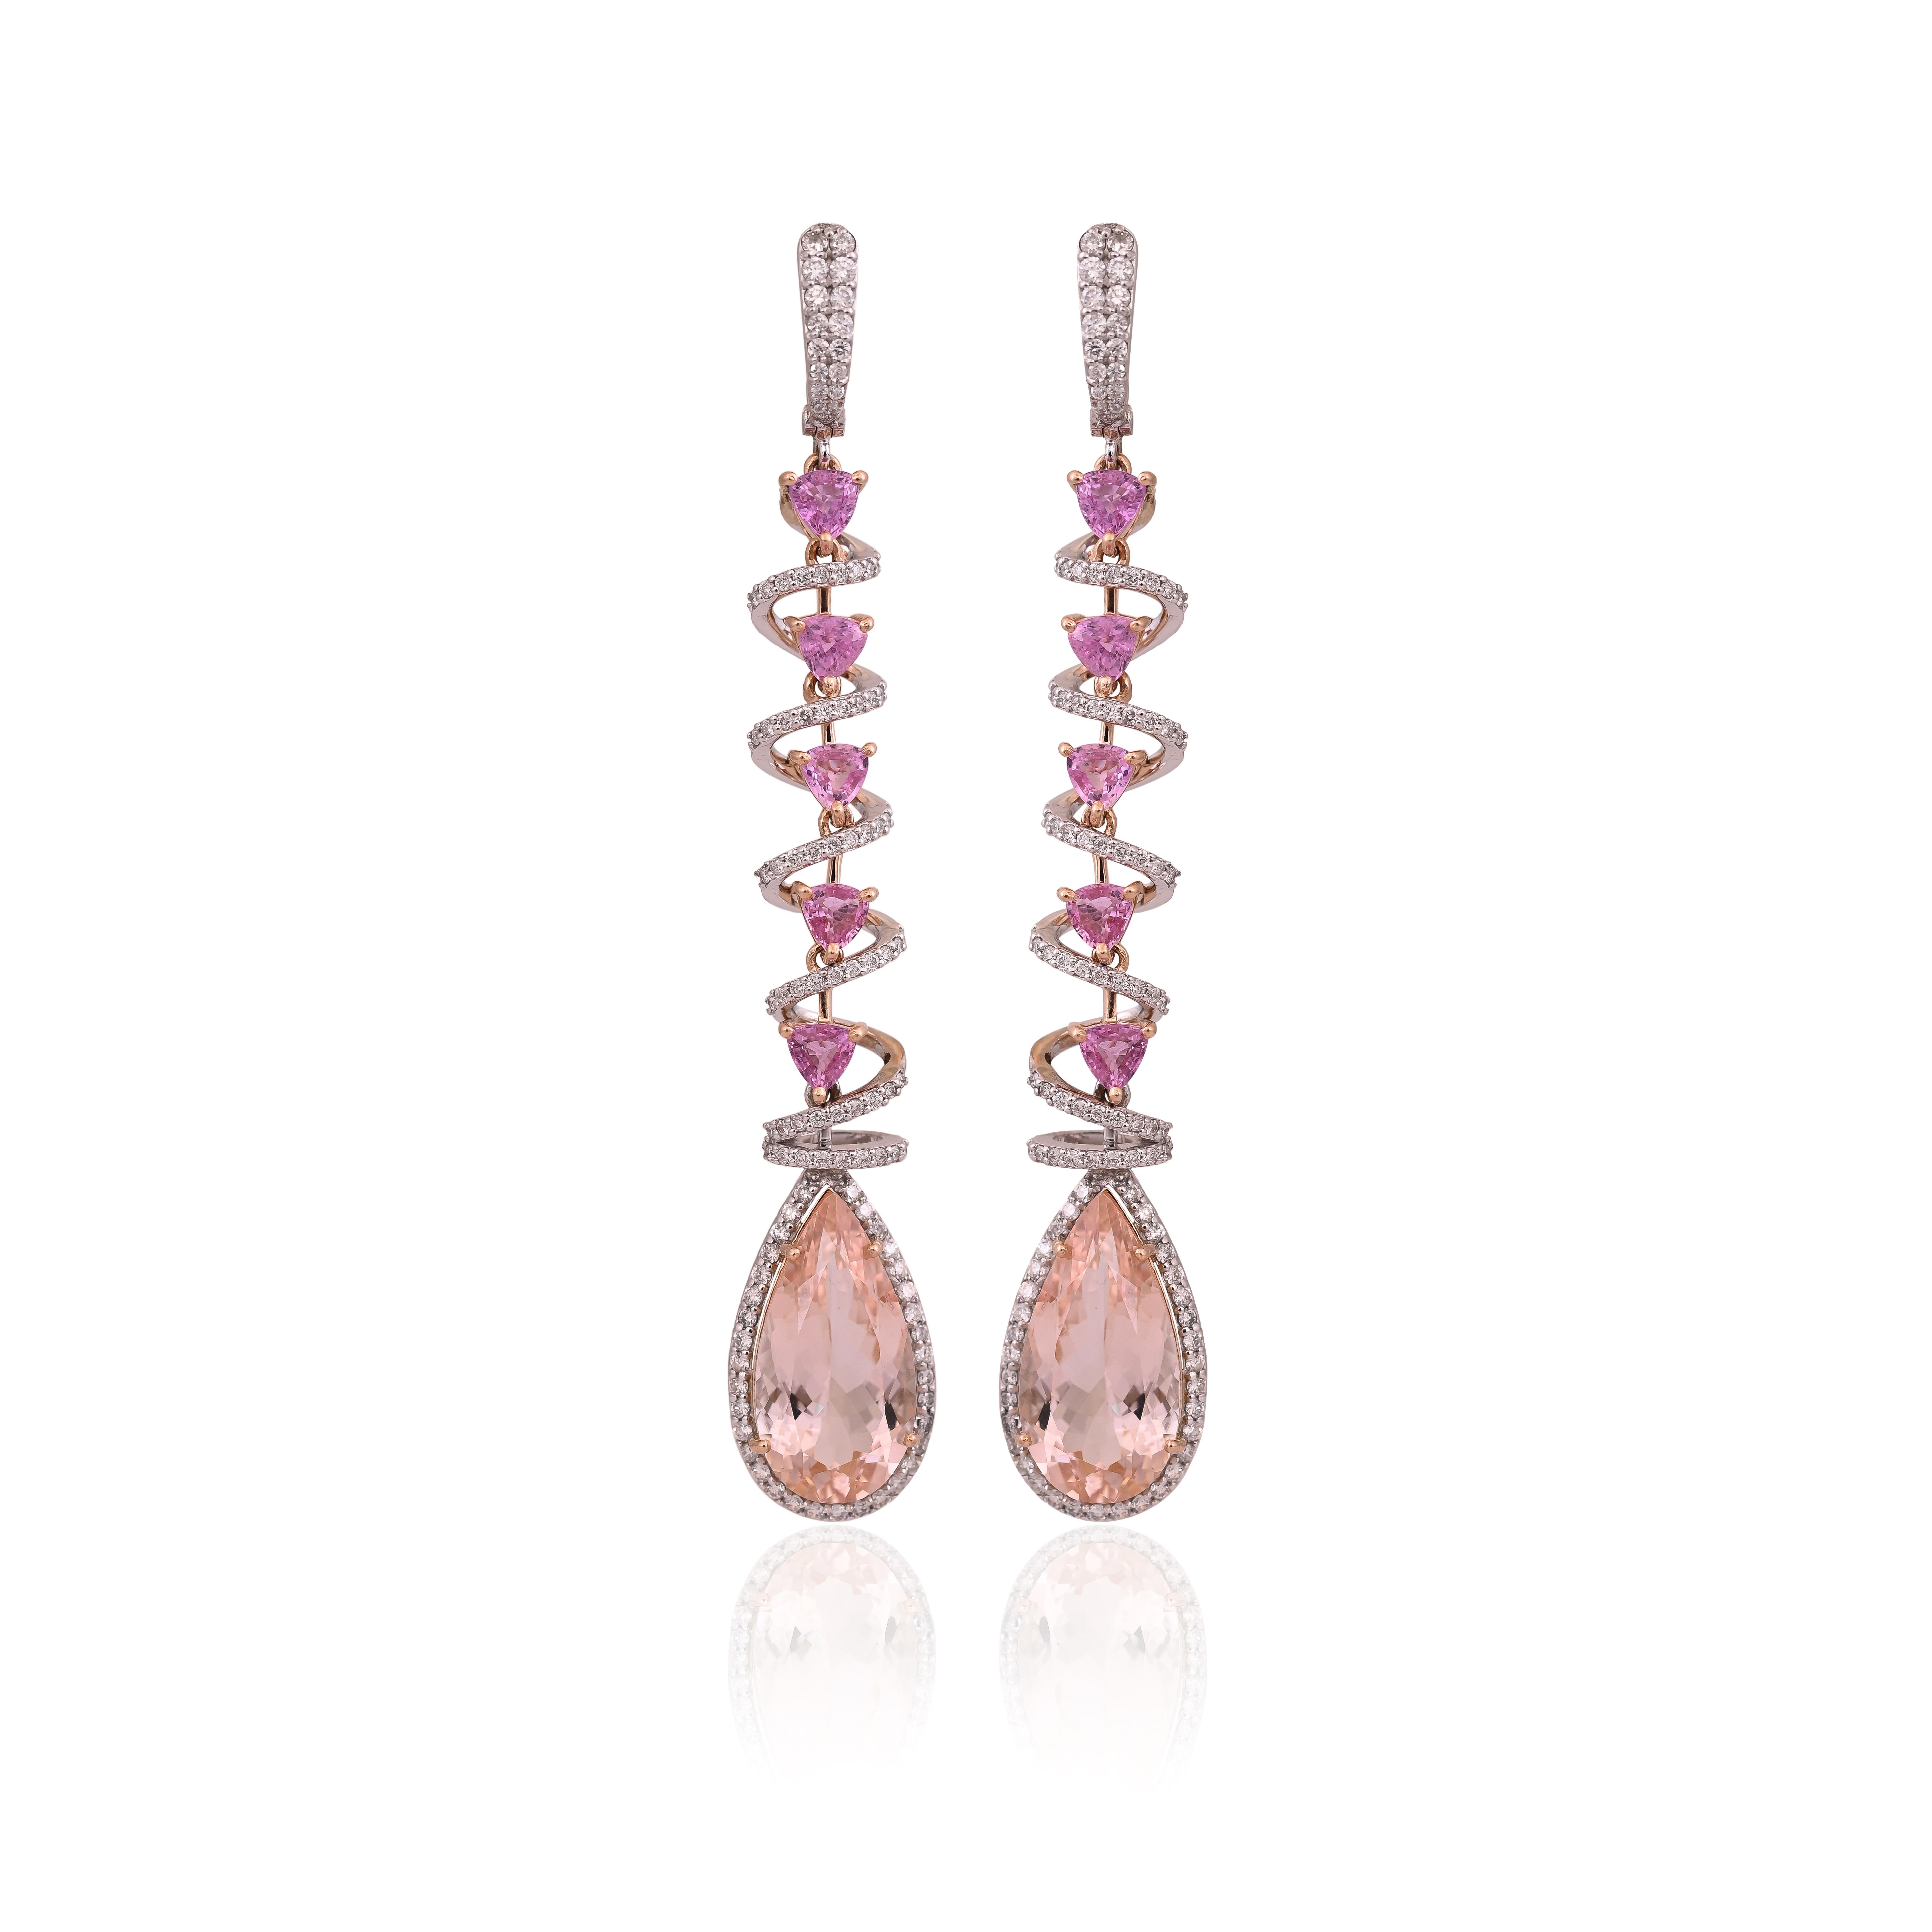 Boucles d'oreilles chandelier en or rose 18 carats et diamants avec Morganite et saphir rose, uniques en leur genre. Le poids des Morganites en forme de poire est de 13,14 carats. Le poids des saphirs roses est de 3.03 carats. Les saphirs roses sont